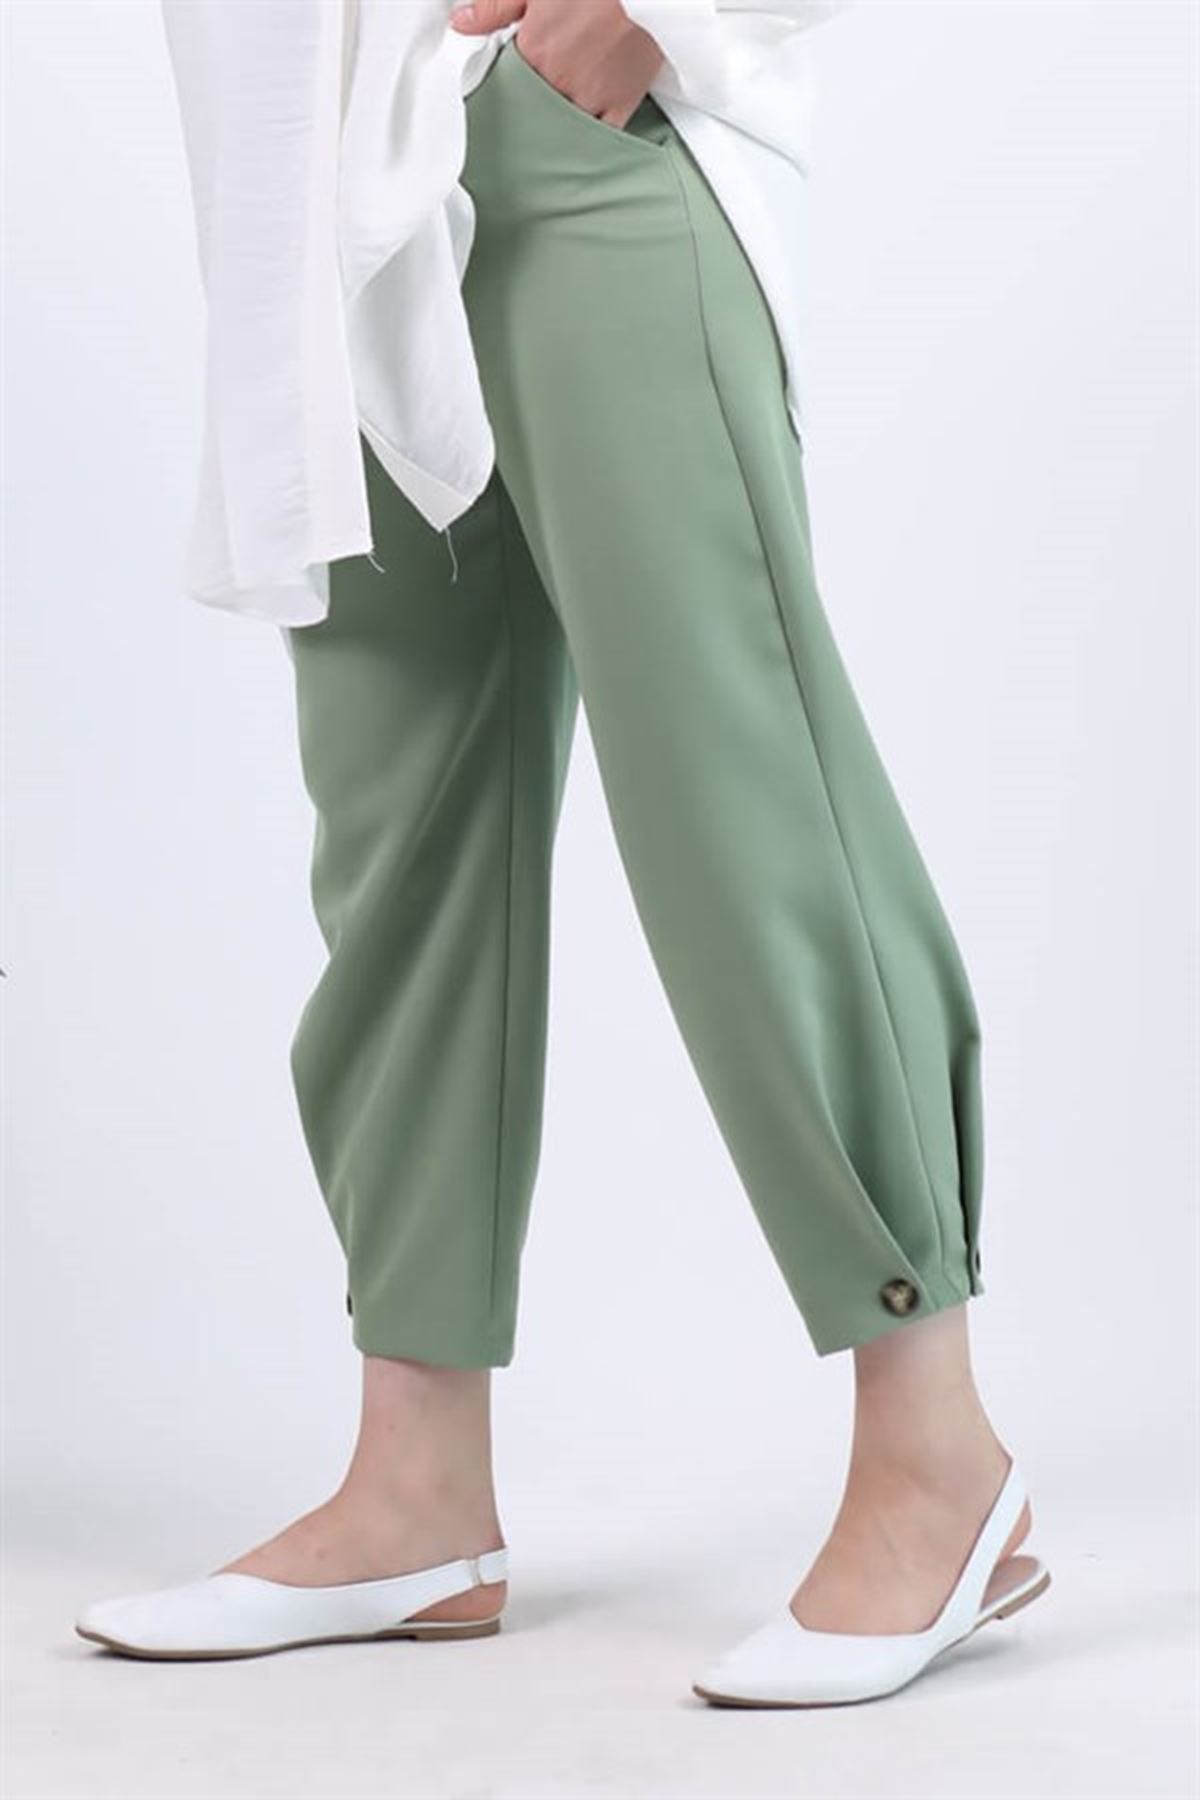 Kadın Bileği Düğme Detaylı Pantolon - Yeşil